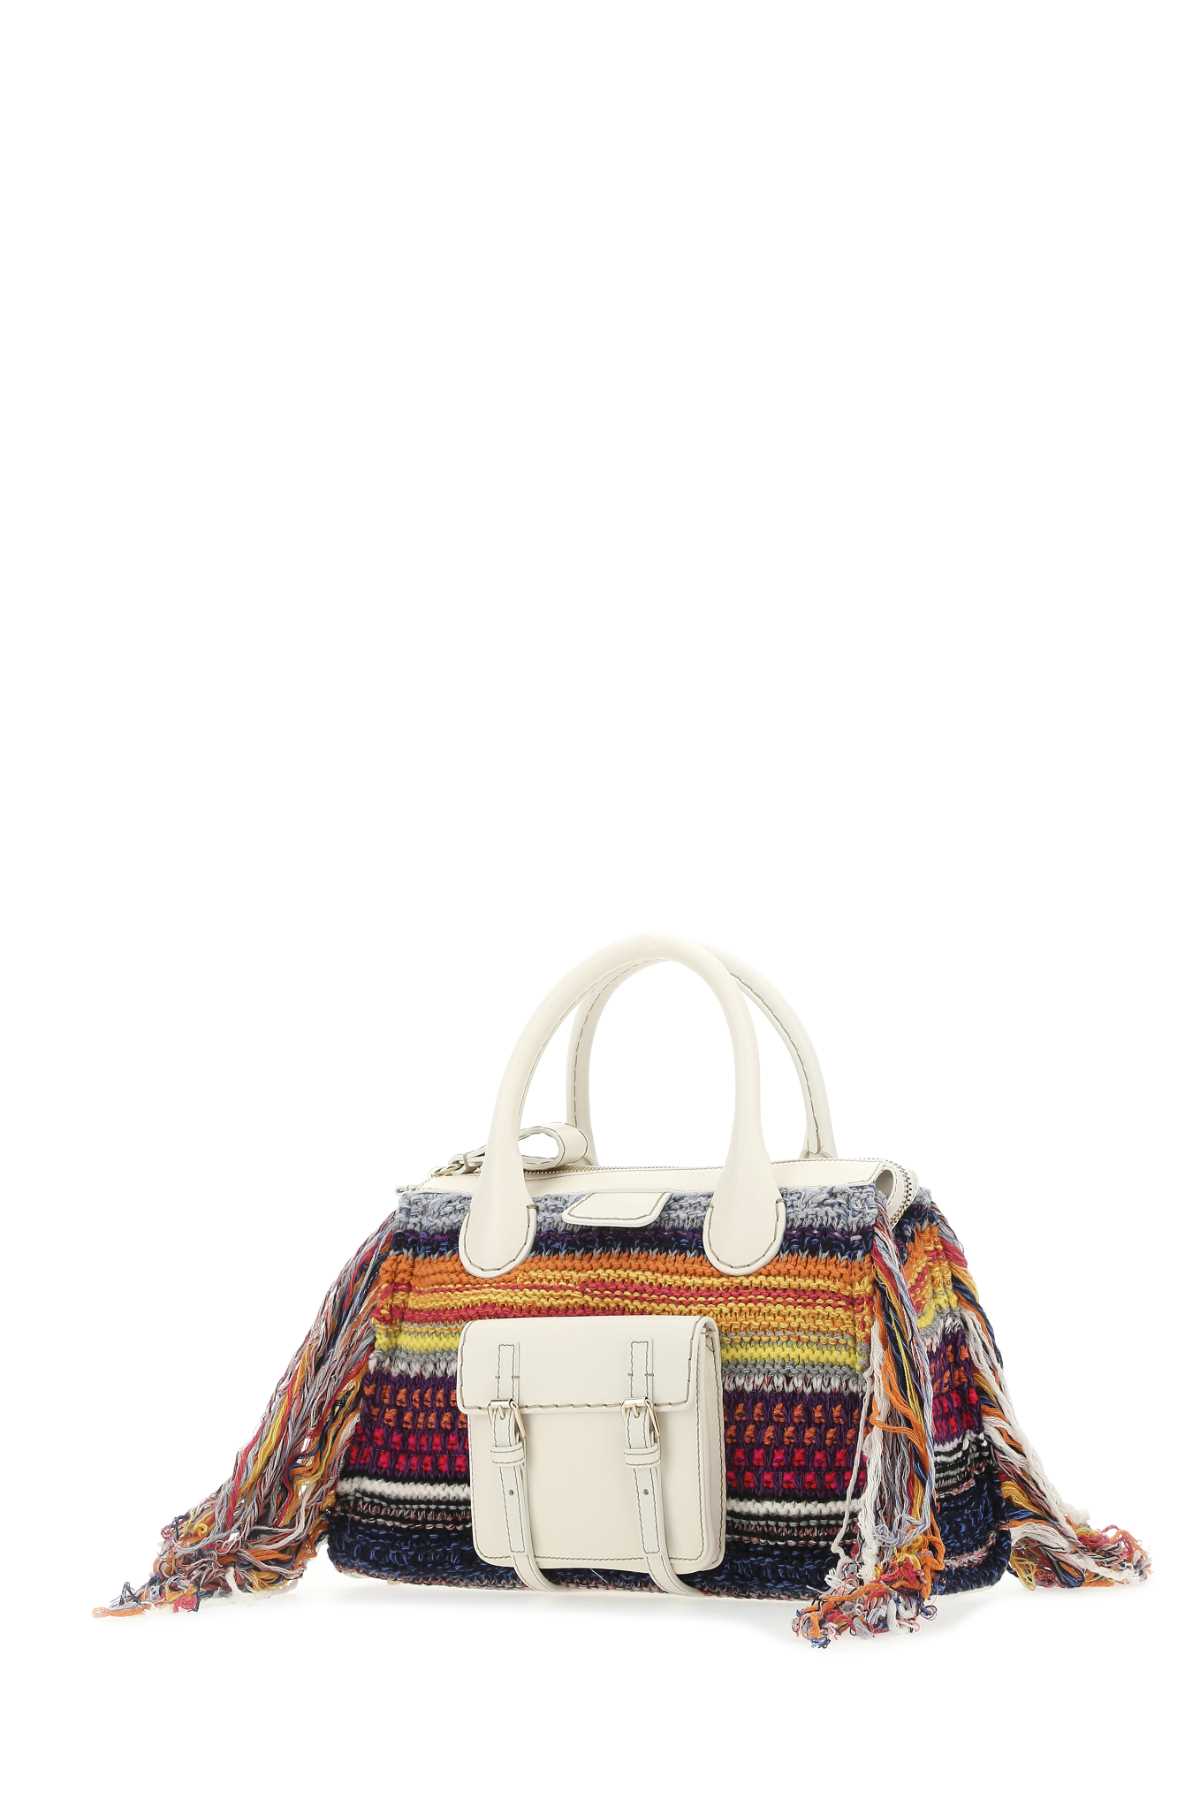 Chloé Multicolor Leather And Cashmere Medium Edith Handbag In 1za